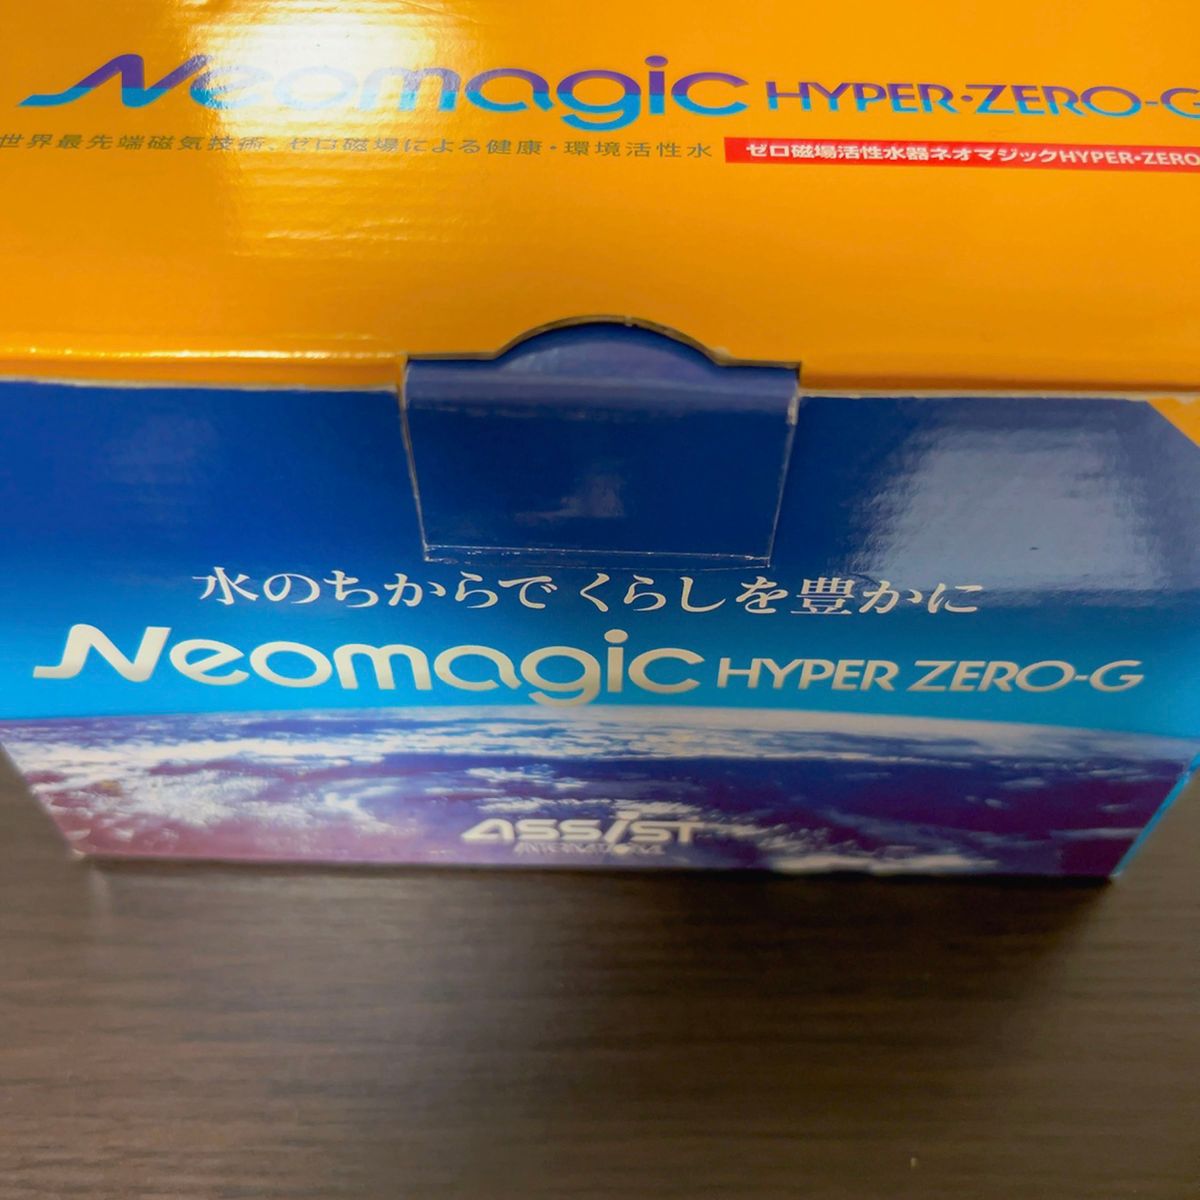 ゼロ磁場活性水器ネオマジックHYPER・ZERO-G